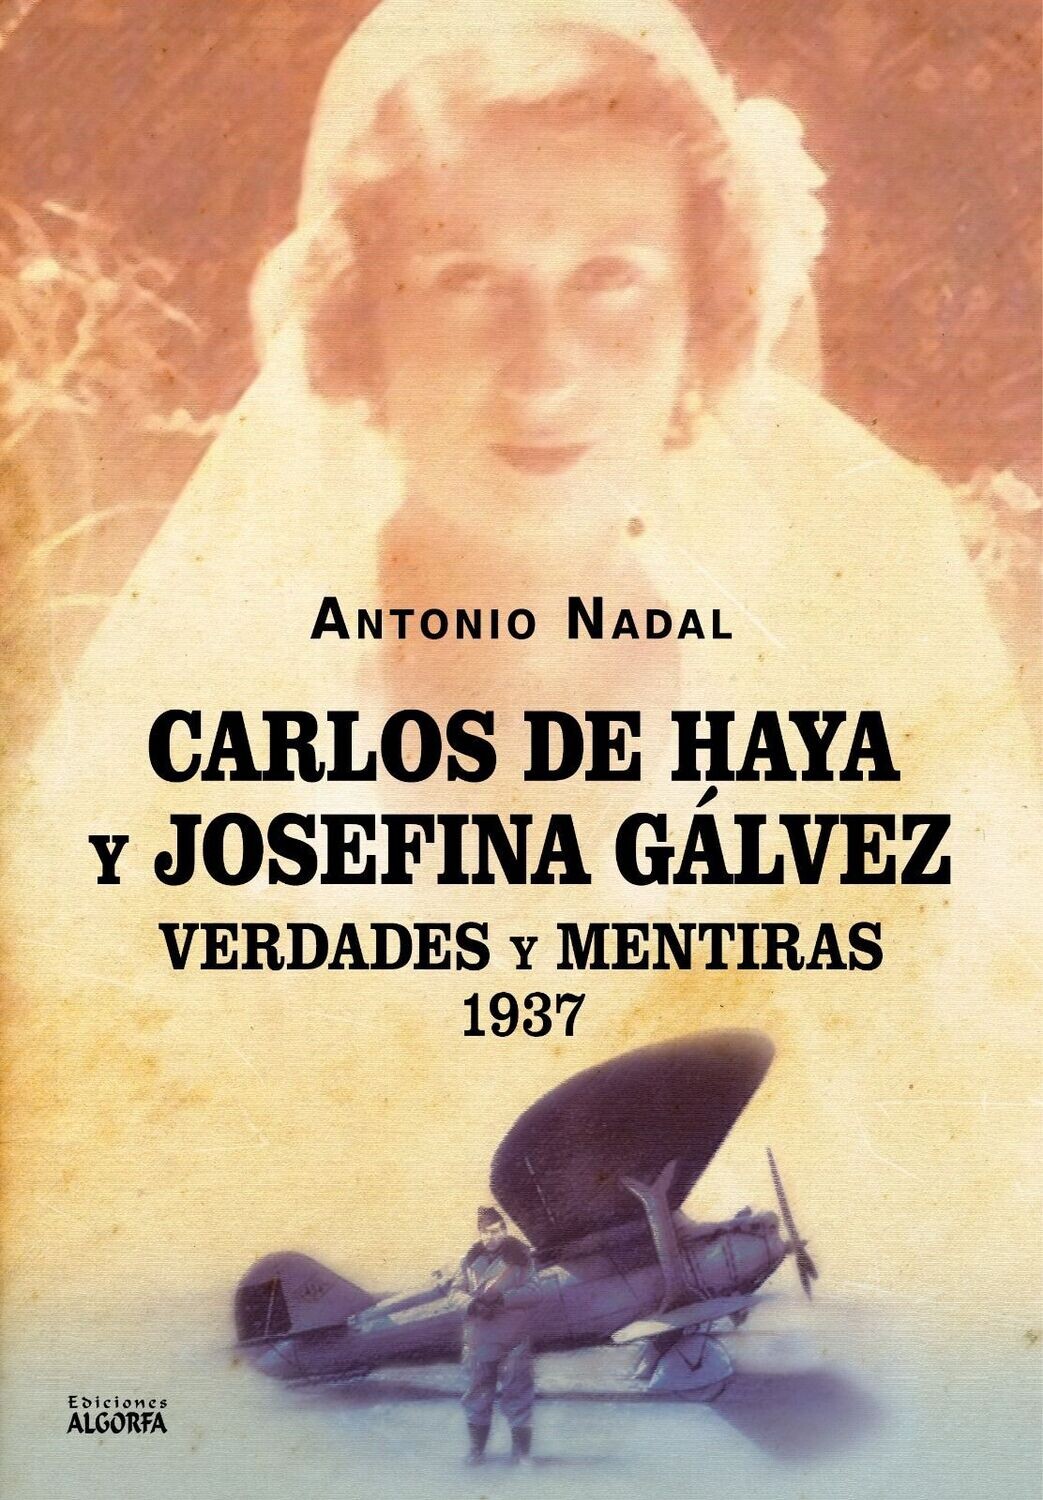 CARLOS DE HAYA Y JOSEFINA GÁLVEZ: VERDADES Y MENTIRAS, 1937. Antonio Nadal